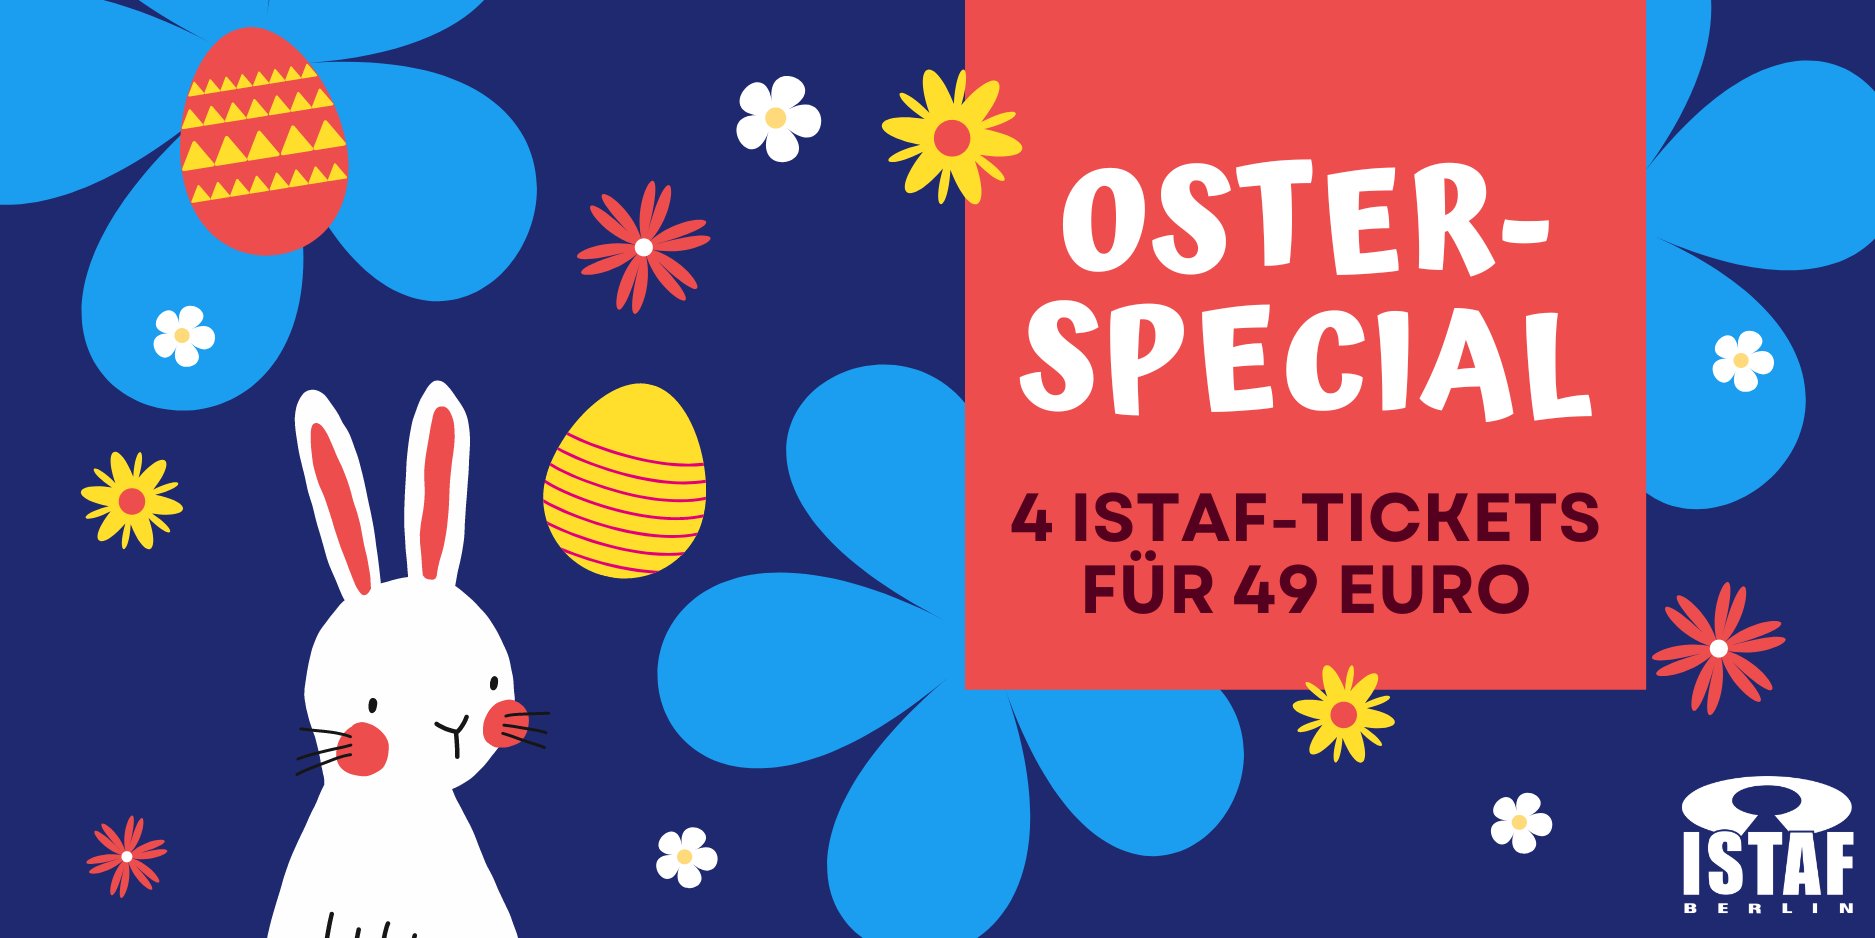 Weltklasse-Leichtathletik live beim ISTAF: 4 Tickets für nur 49 Euro – jetzt Oster-Special sichern